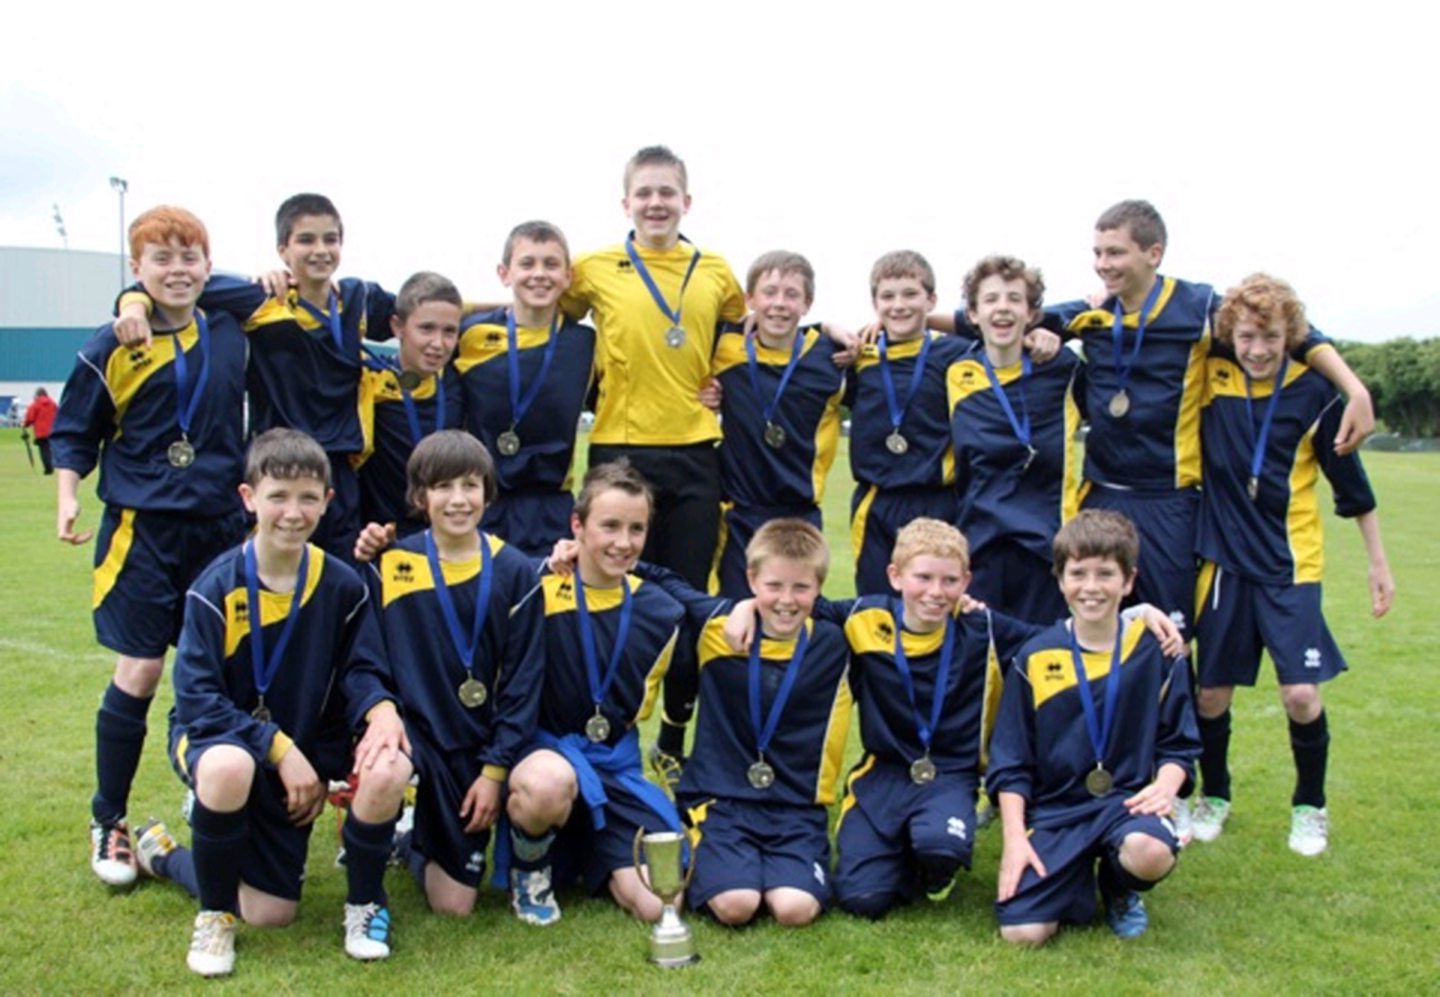 The schools U13s football team